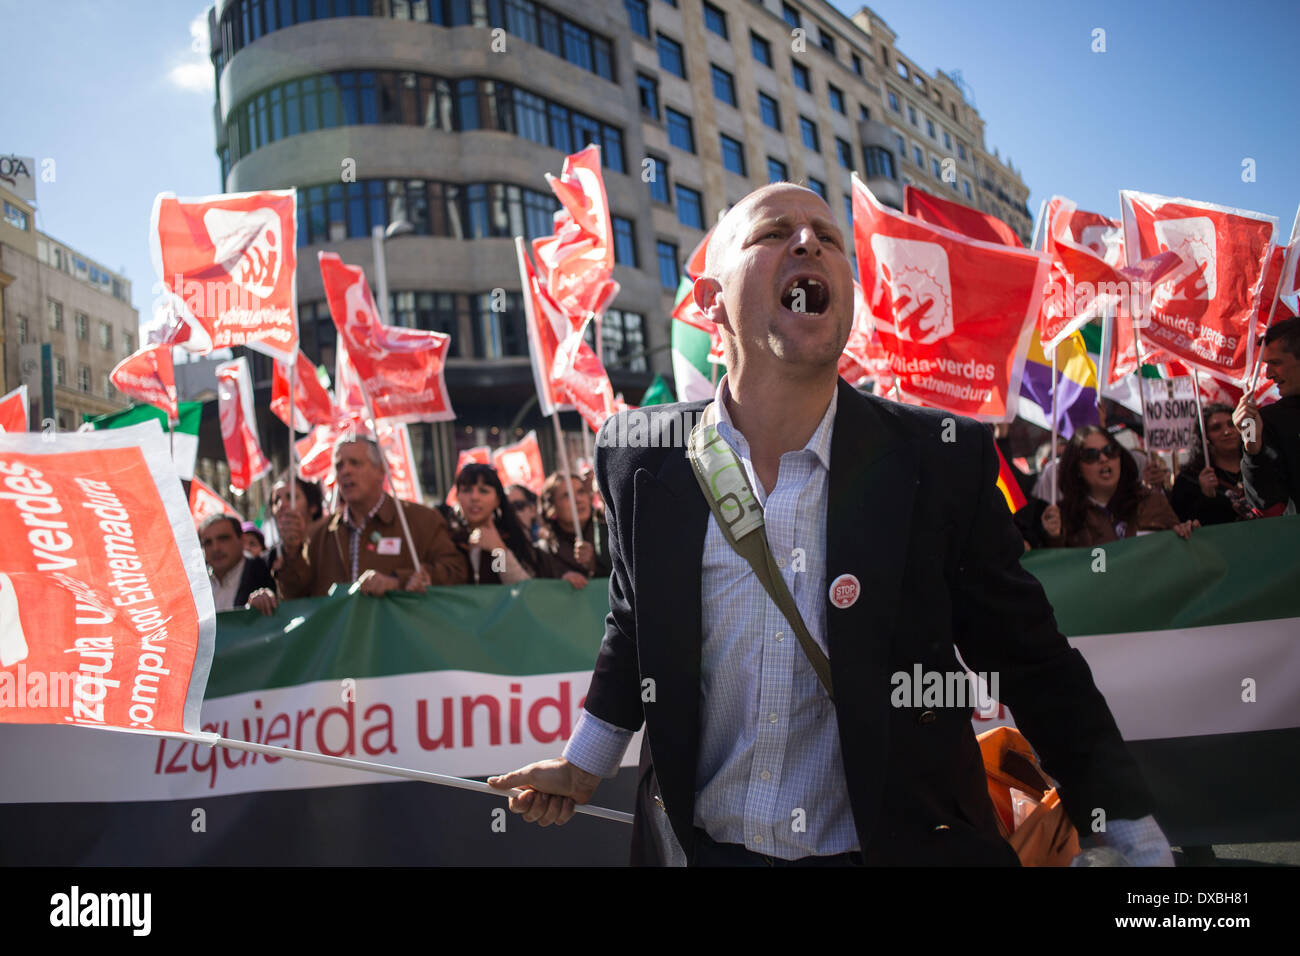 Madrid, Spanien. 22. März 2014. Die spanische Polizei und Demonstranten stießen am Ende während einer Anti-Sparmaßnahmen Demo namens "März für würde" gegen die Regierung in Madrid, Spanien, Samstag. Die spanische Polizei und Demonstranten stießen am Ende einer Demonstration gegen Sparpolitik, die Zehntausende von Menschen ins Zentrum von Madrid am Samstag zog. Die Polizei sagte in einer Erklärung, mehr als 100 Personen verletzten 55 Offiziere waren, die einige von ihnen mit schweren Wunden und 29 Personen wurden verhaftet. Bildnachweis: Michael Bunel/NurPhoto/ZUMAPRESS.com/Alamy Live-Nachrichten Stockfoto